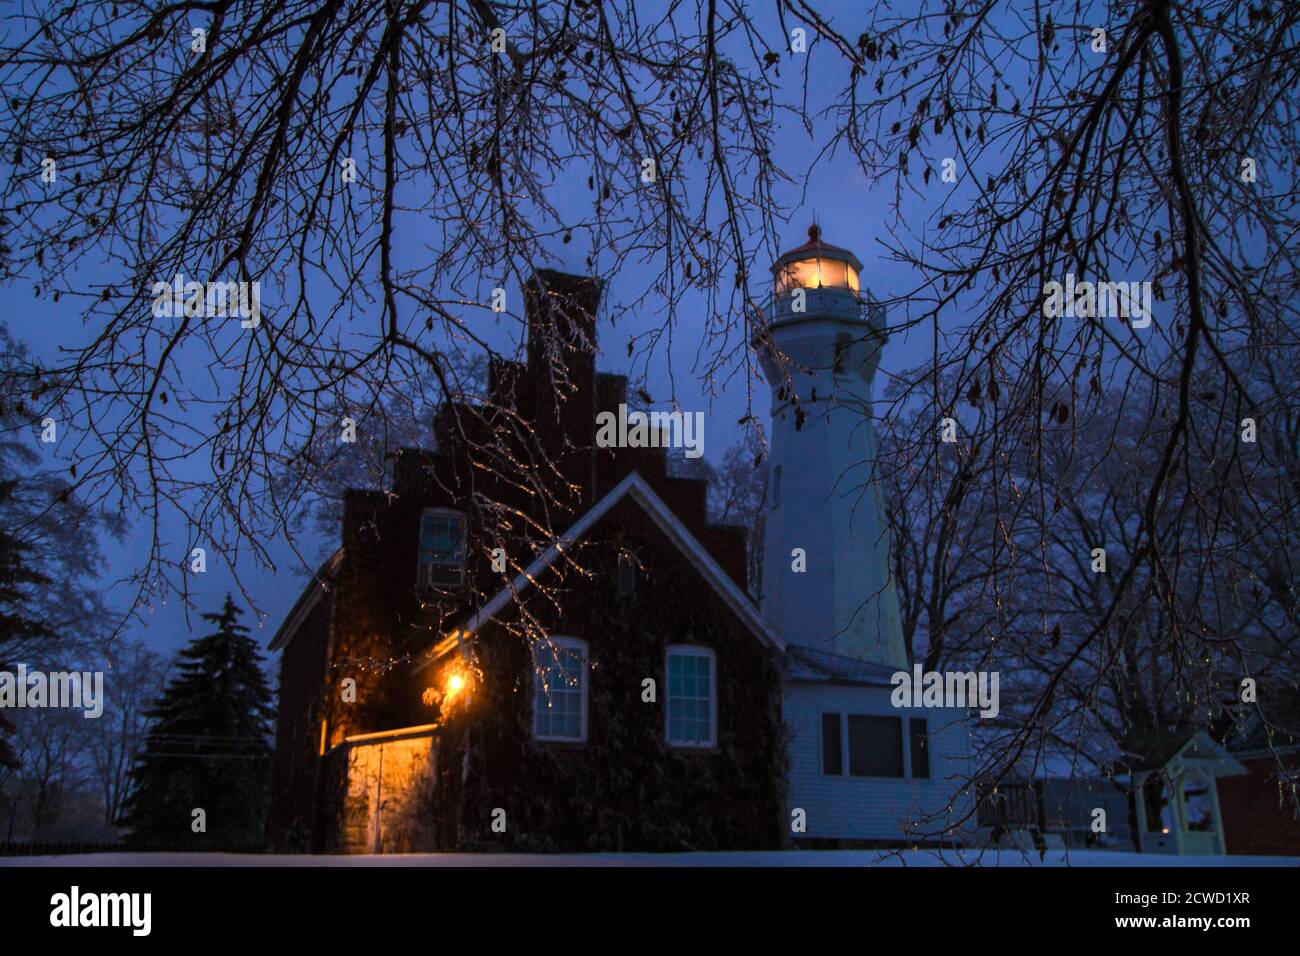 Port Sanilac, Michigan, Stati Uniti d'America - 12 dicembre 2013: Faro illuminato del faro di Port Sanilac circondato da cicliche in una fredda notte invernale. Foto Stock